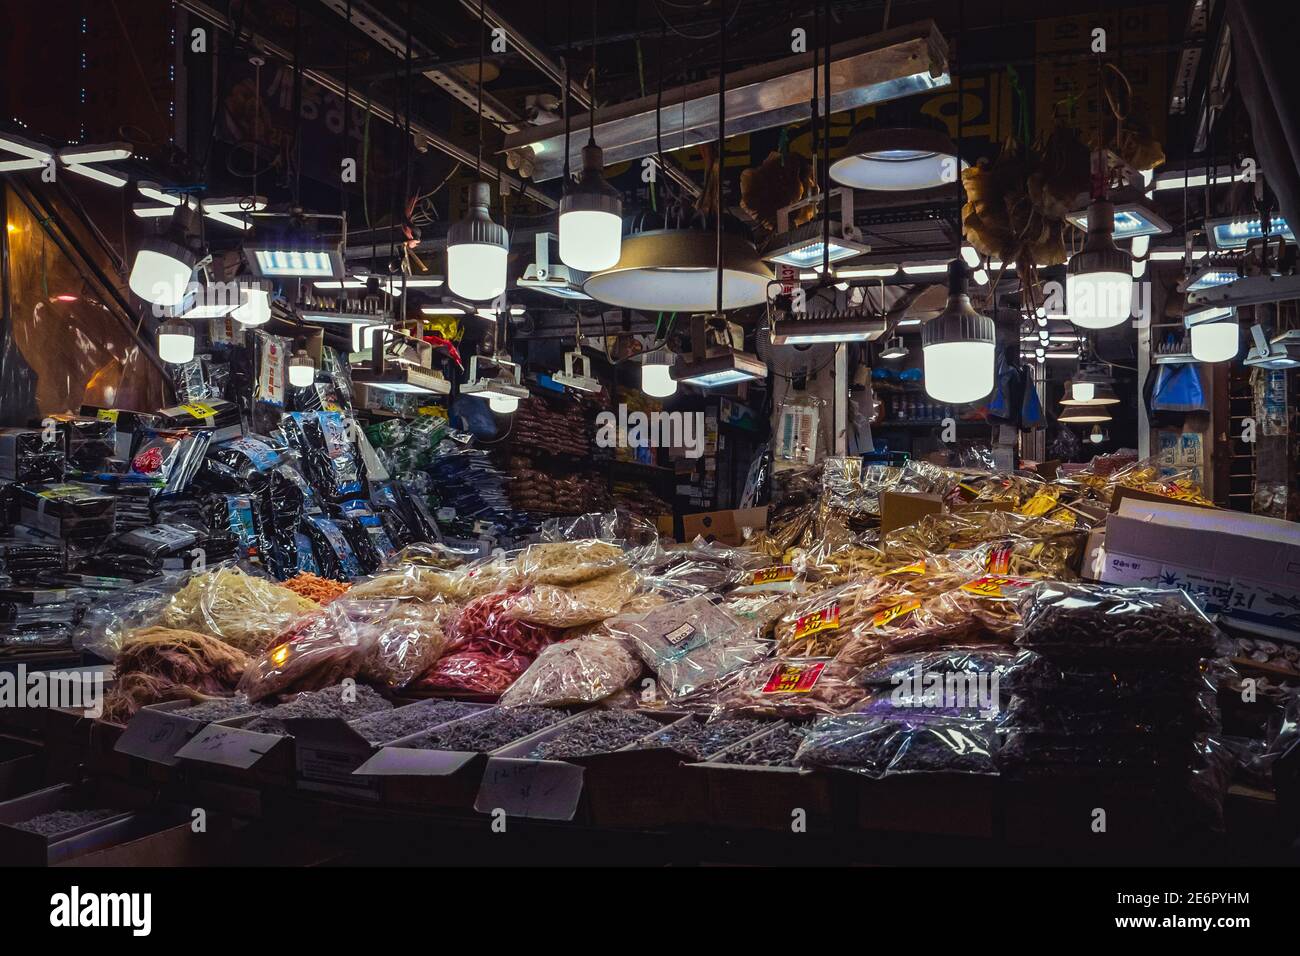 Traditioneller koreanischer Markt, der typische koreanische Lebensmittel, Gemüse und Gewürze verkauft - in diesem Bild eine Vielzahl von trockenen Zutaten und Delikatessen Stockfoto